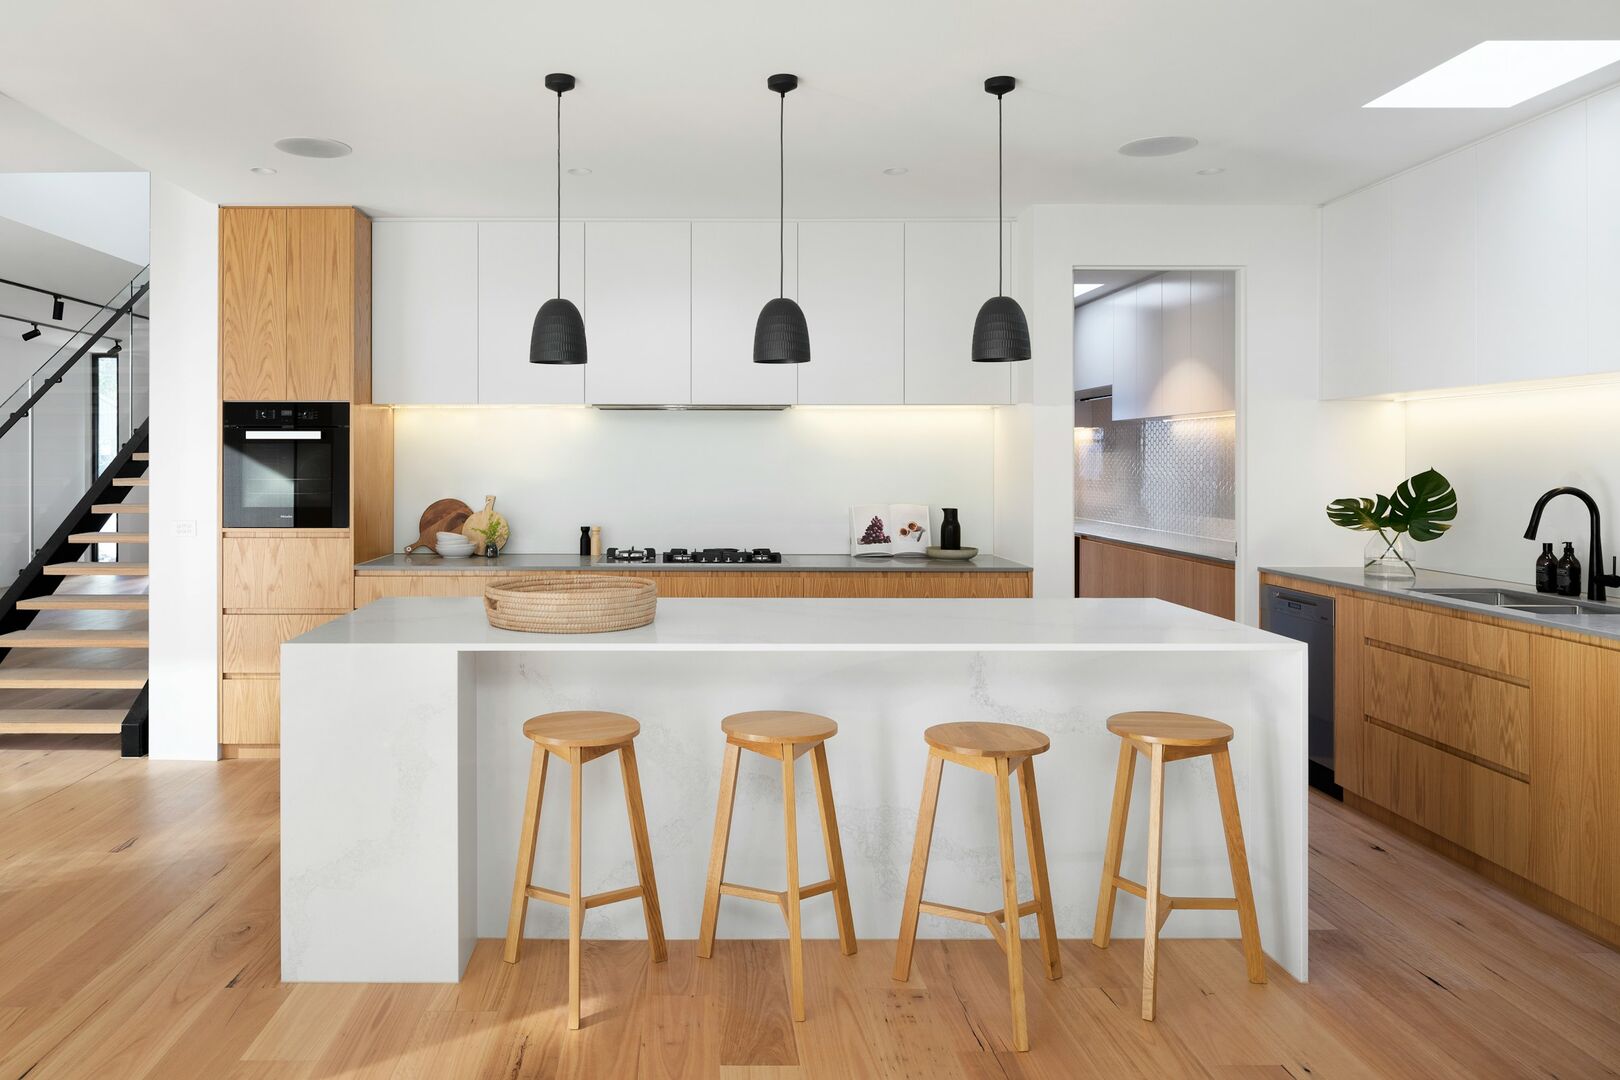 Modern kitchen renovation, white and white oak kitchen renovation, scandinavian kitchen renovation